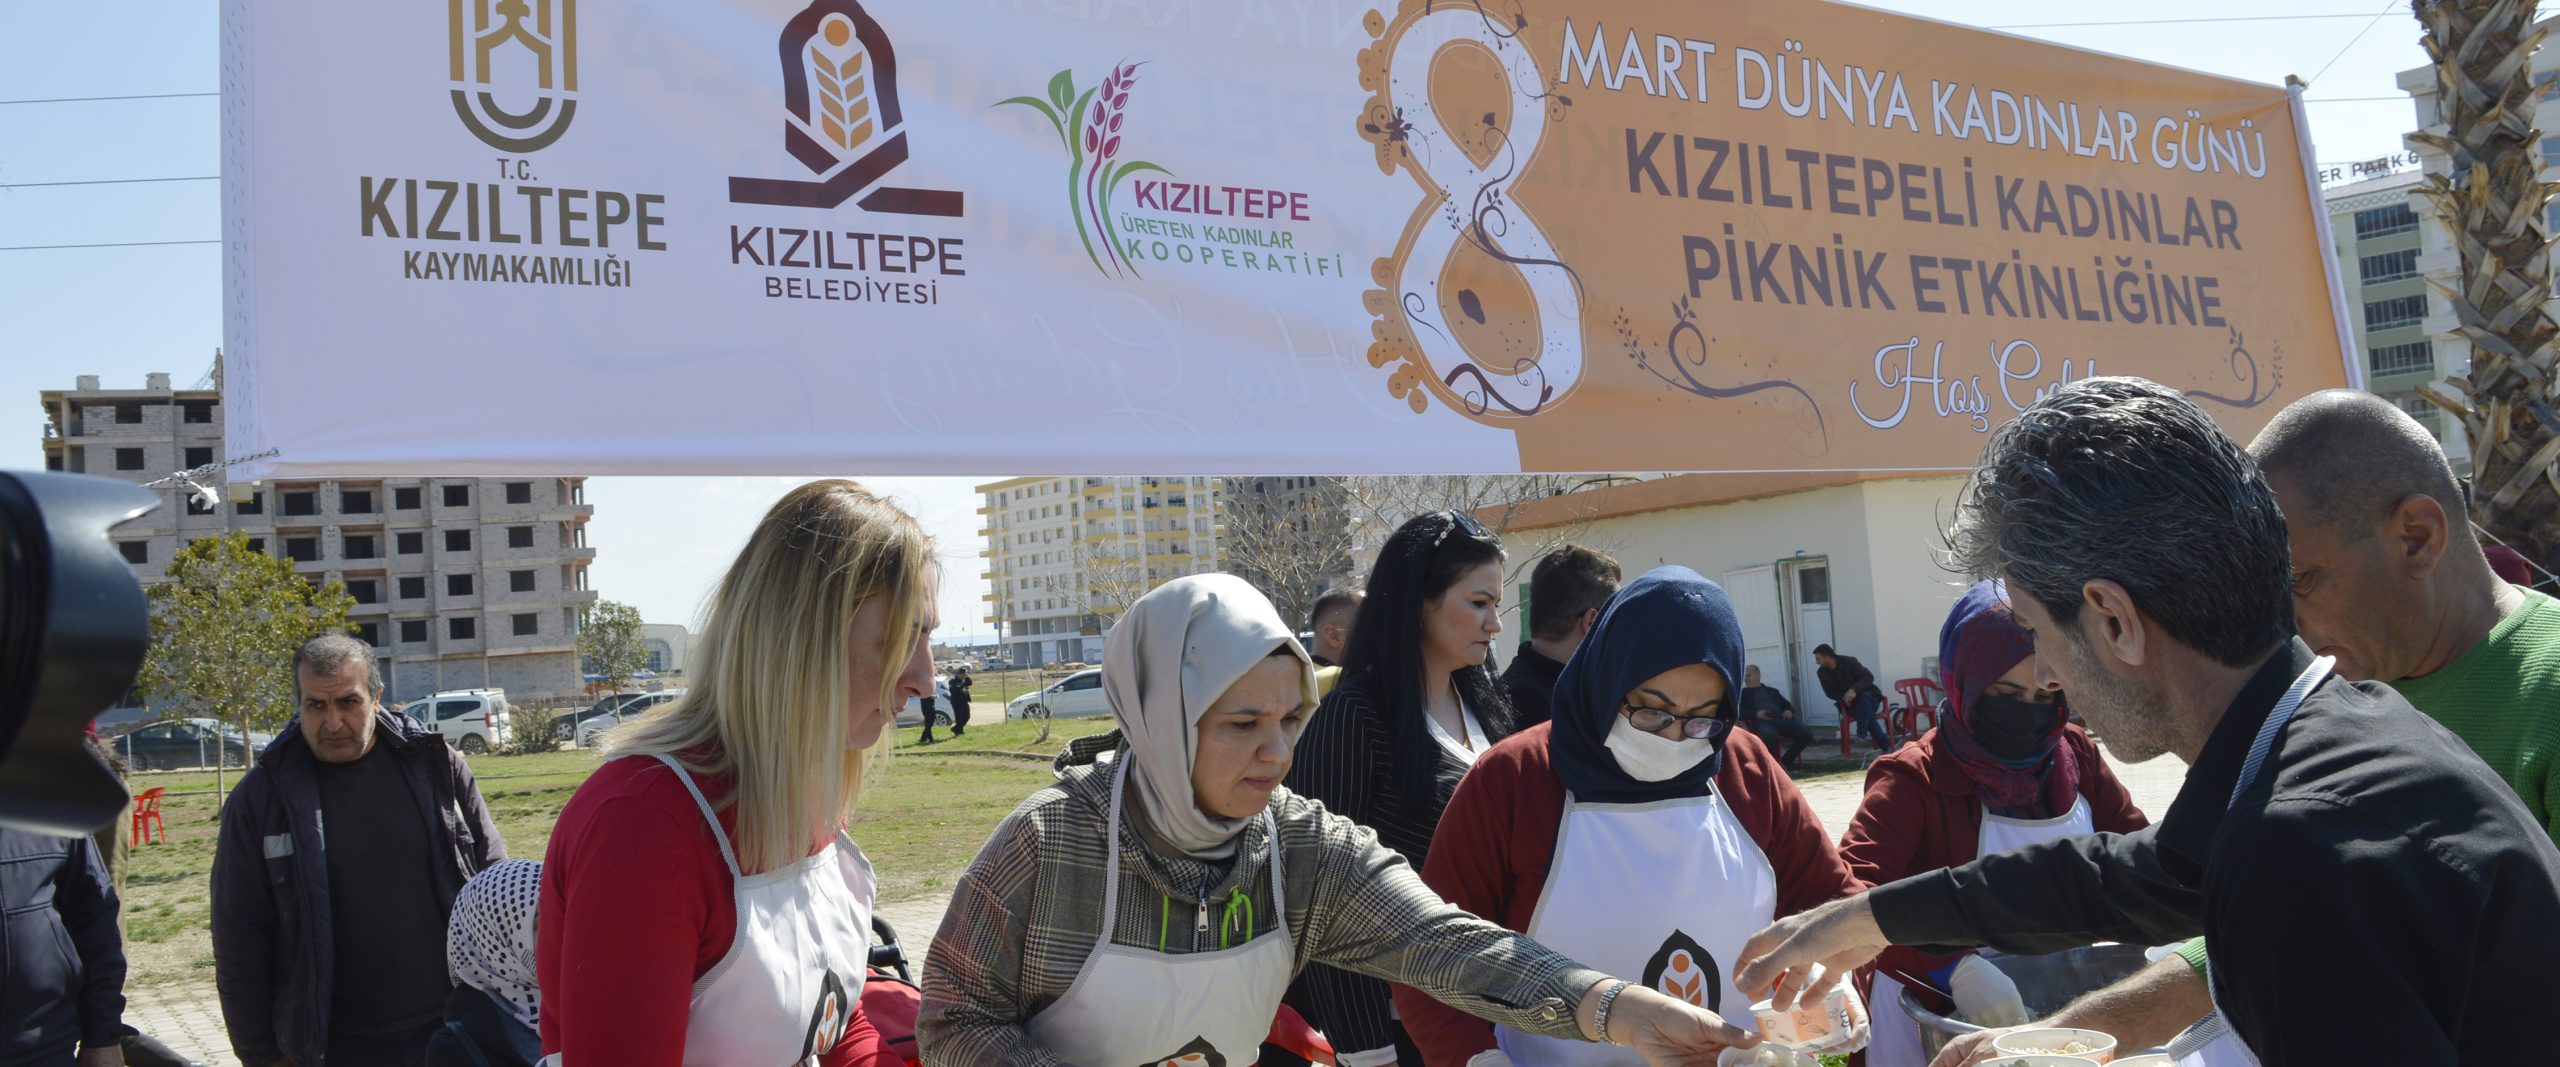 Kızıltepe’de “Dünya Kadınlar Günü” etkinliği